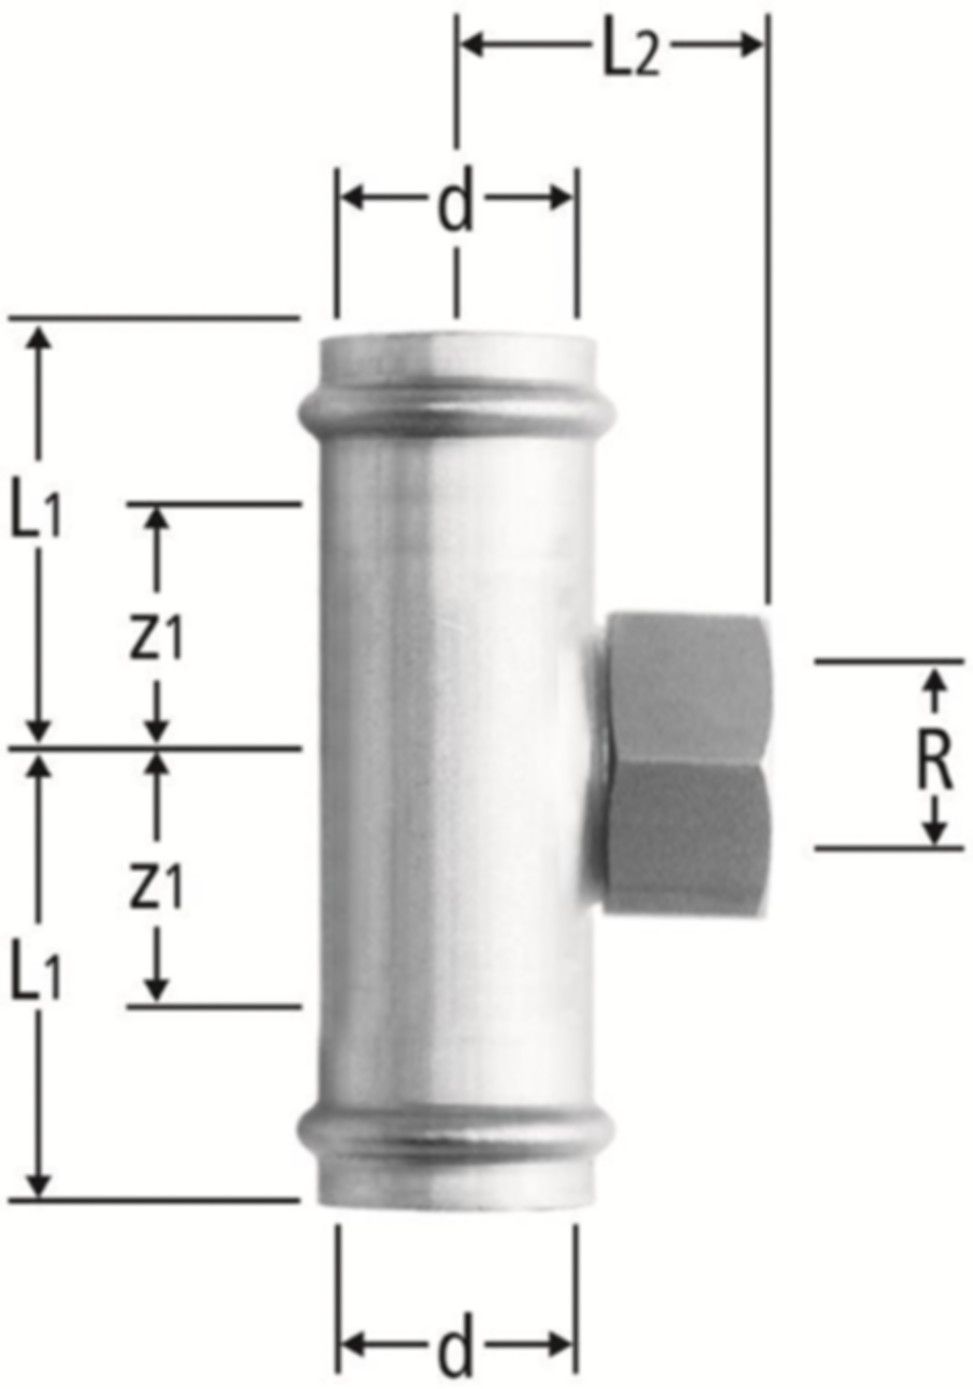 T-Stück m/IG 54 x 2" x 54 mm 80019.28 mit Schiebemuffe - Nussbaum-Optipress-Inox-Fittings